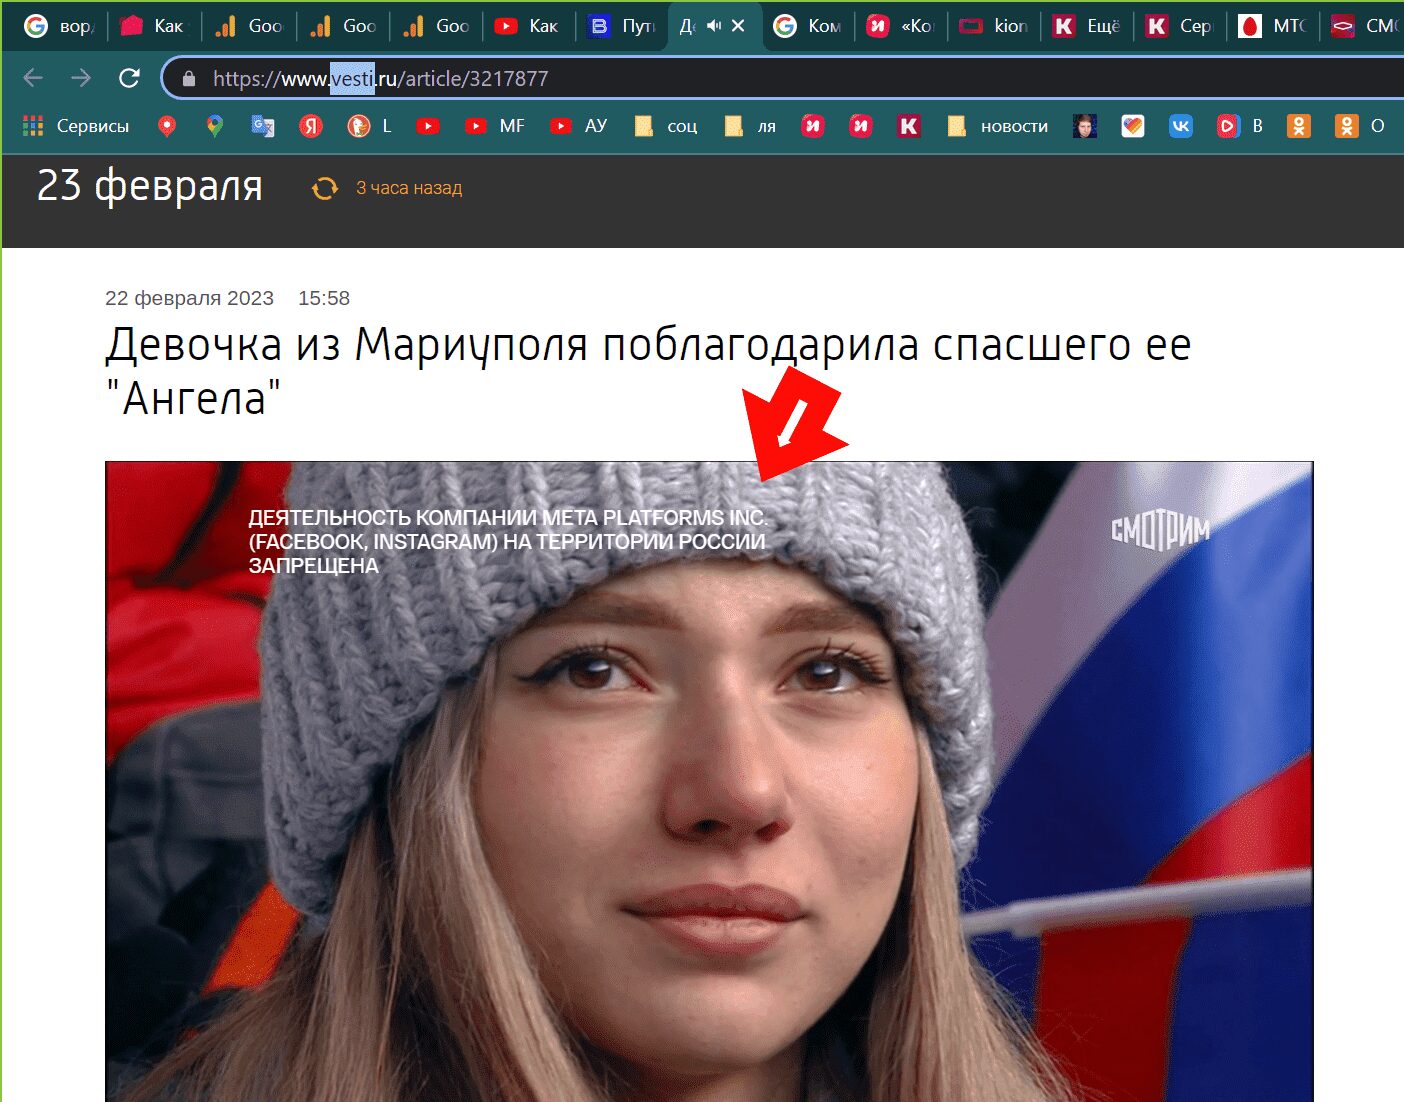 Как и зачем smotrim.ru продвигает запрещенный контент - маг Fose 2